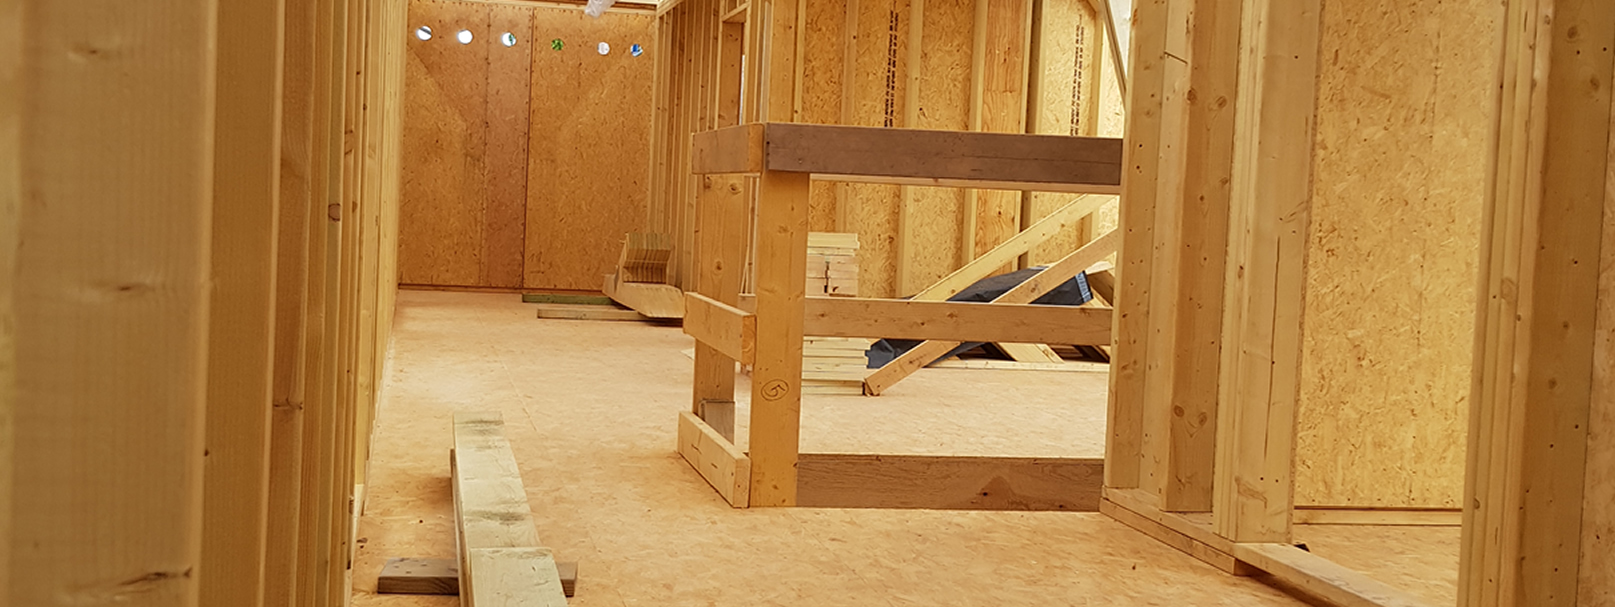 Binnenkant houtskeletbouw in opbouw voor landelijk bijgebouw voor klant uit Oost Vlaanderen